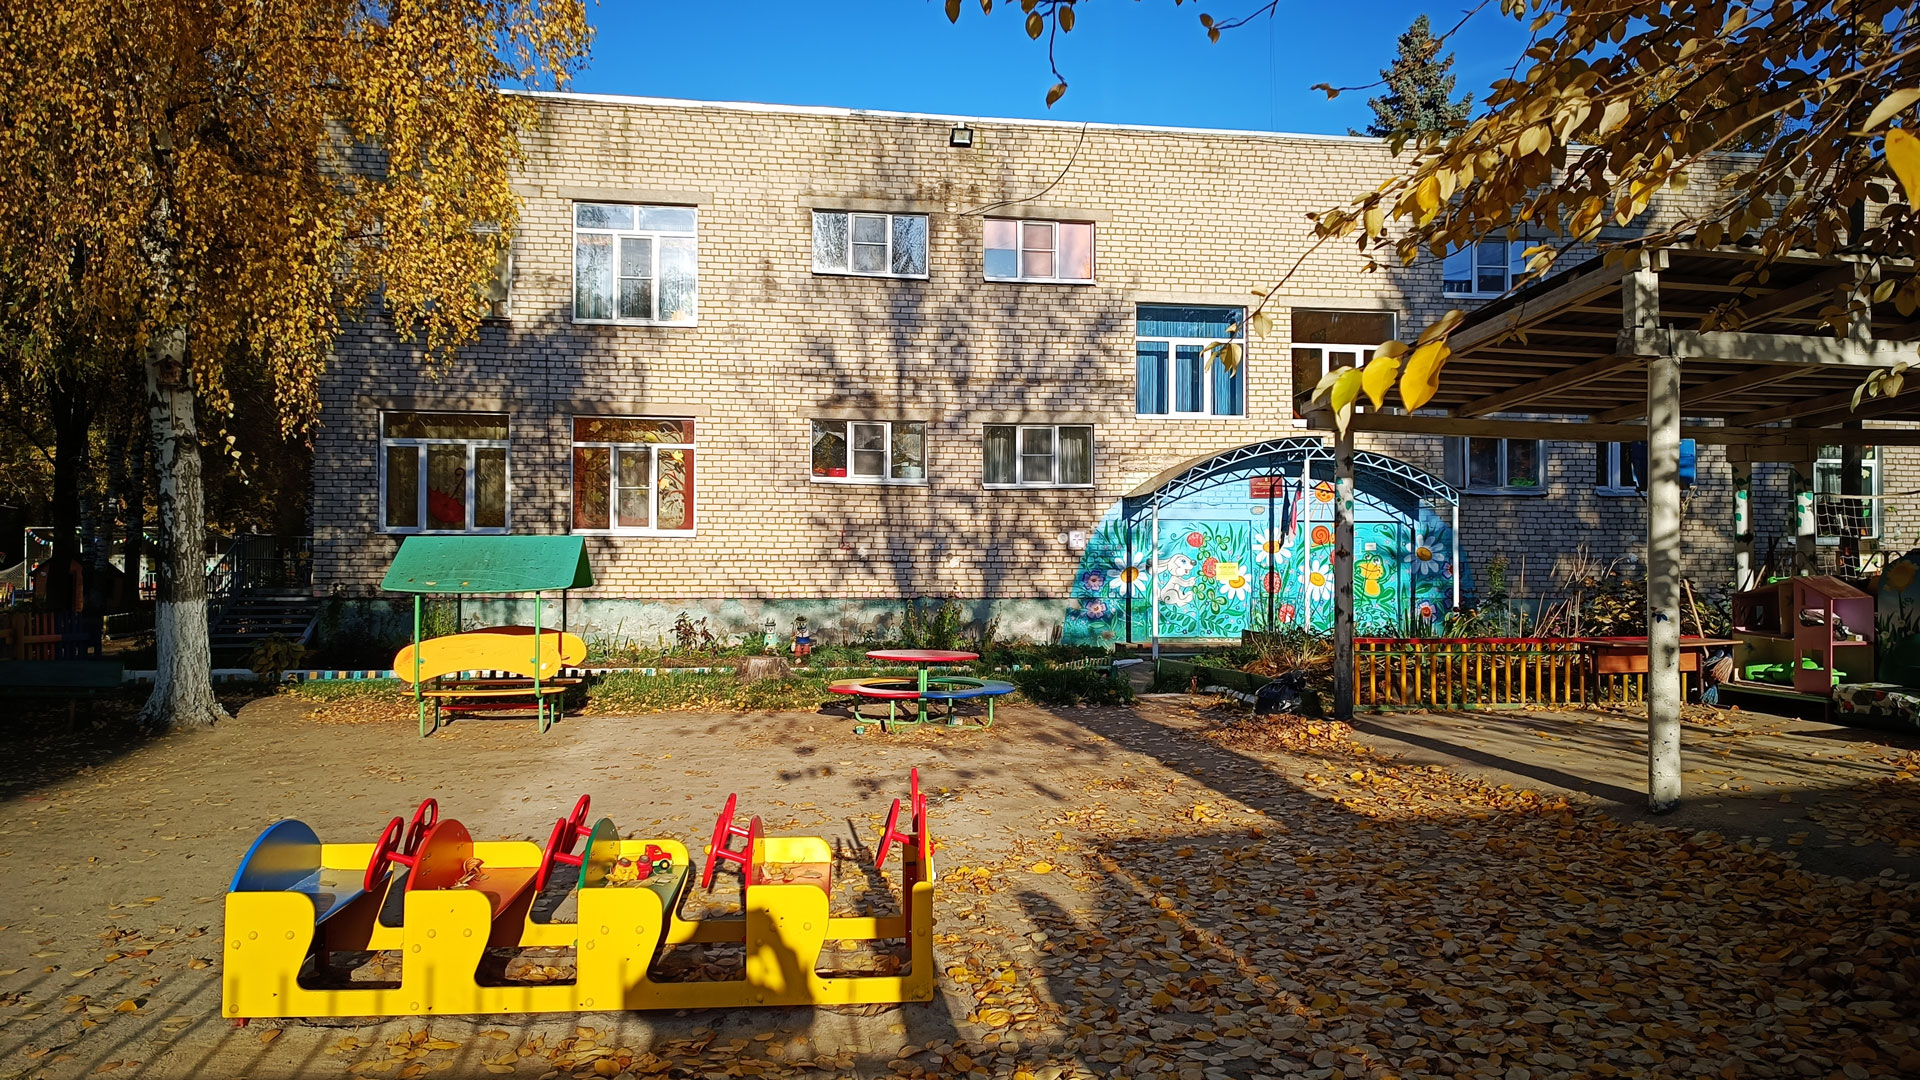 Детский сад 68 Ярославль: общий вид детской площадки.